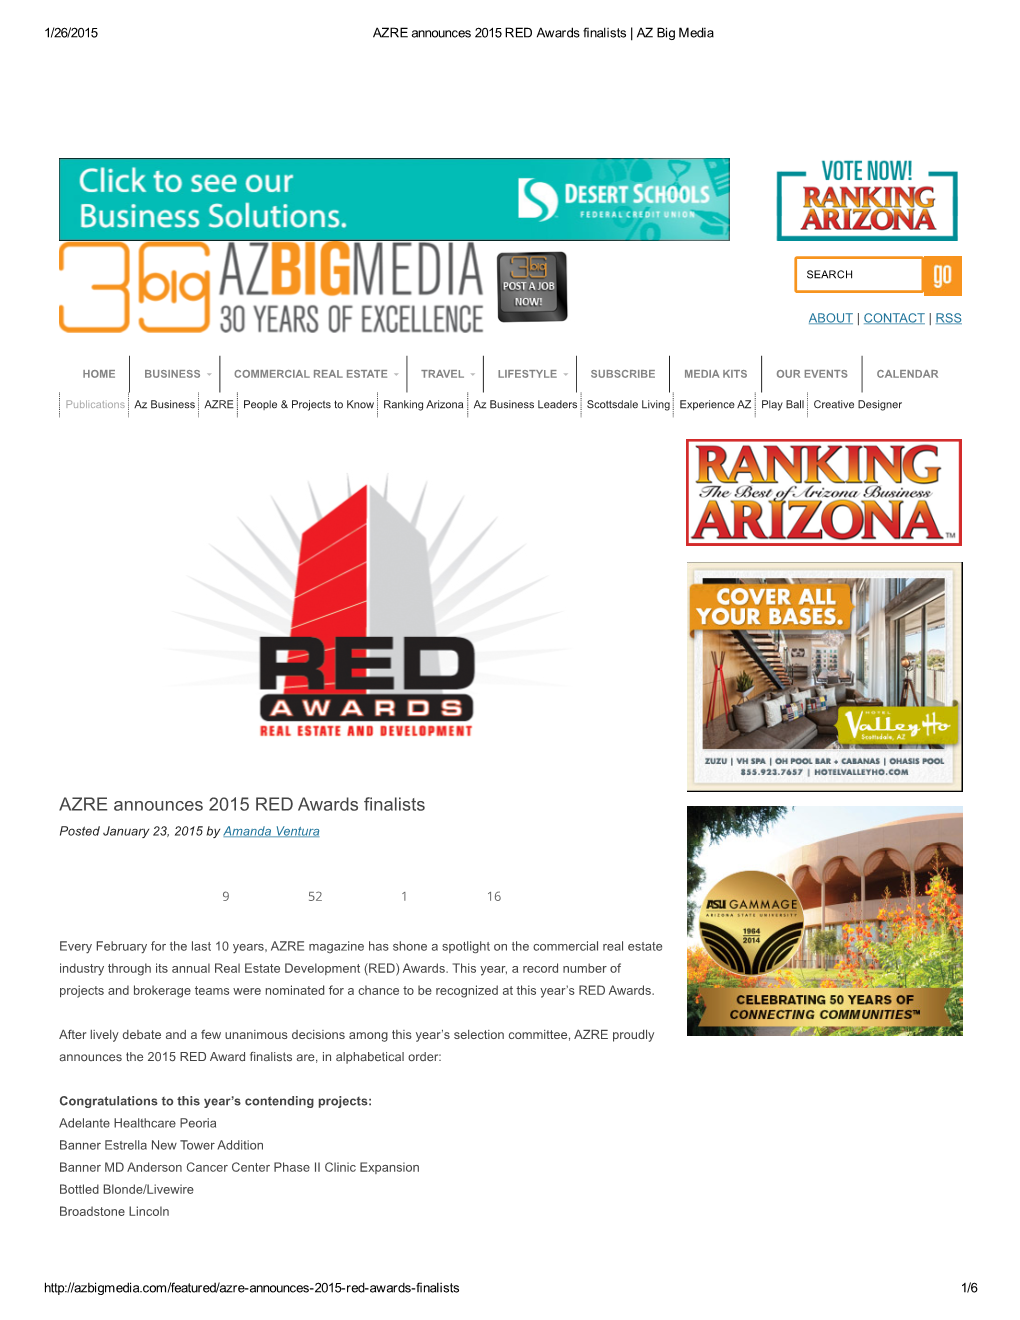 AZRE Announces 2015 RED Awards Finalists | AZ Big Media